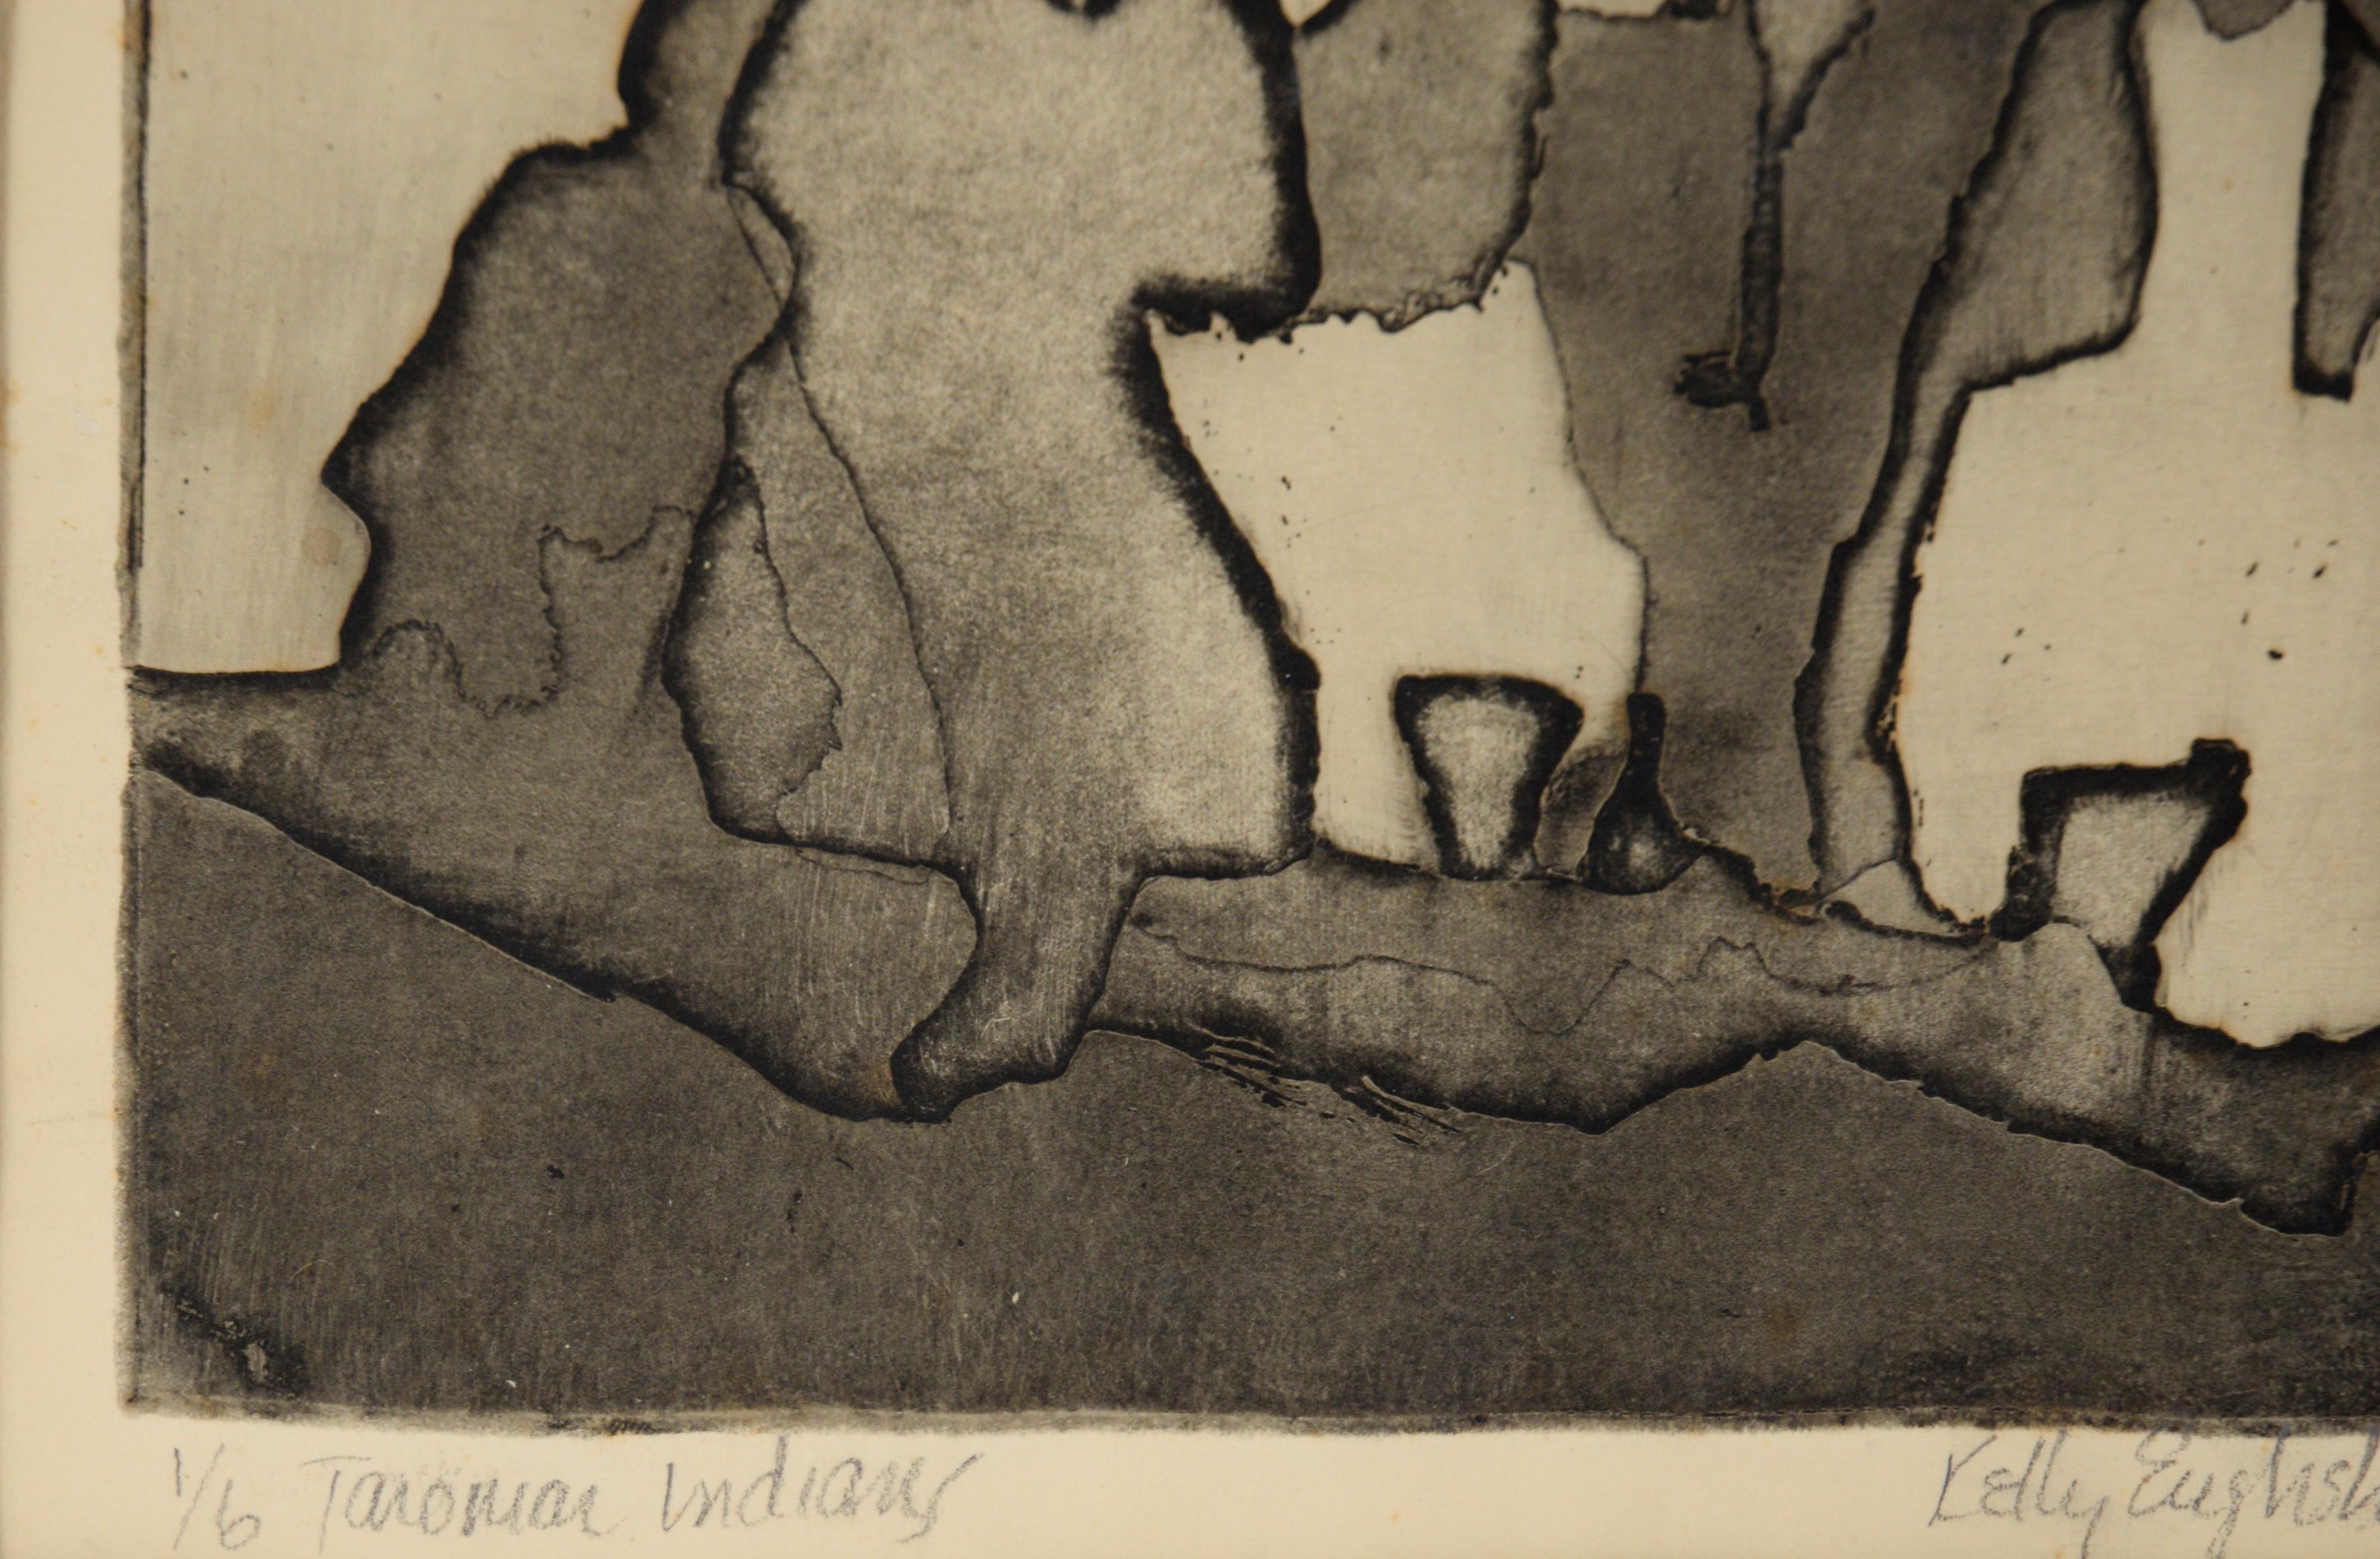 Les Indiens Tarahumara - eau-forte figurative sur papier, 1971

Gravure en noir et blanc de The Tarahumara Indians par Kelly English (américain). Les figures sont tracées à l'encre noire épaisse avec des nuances de gris et de blanc. Un petit nombre